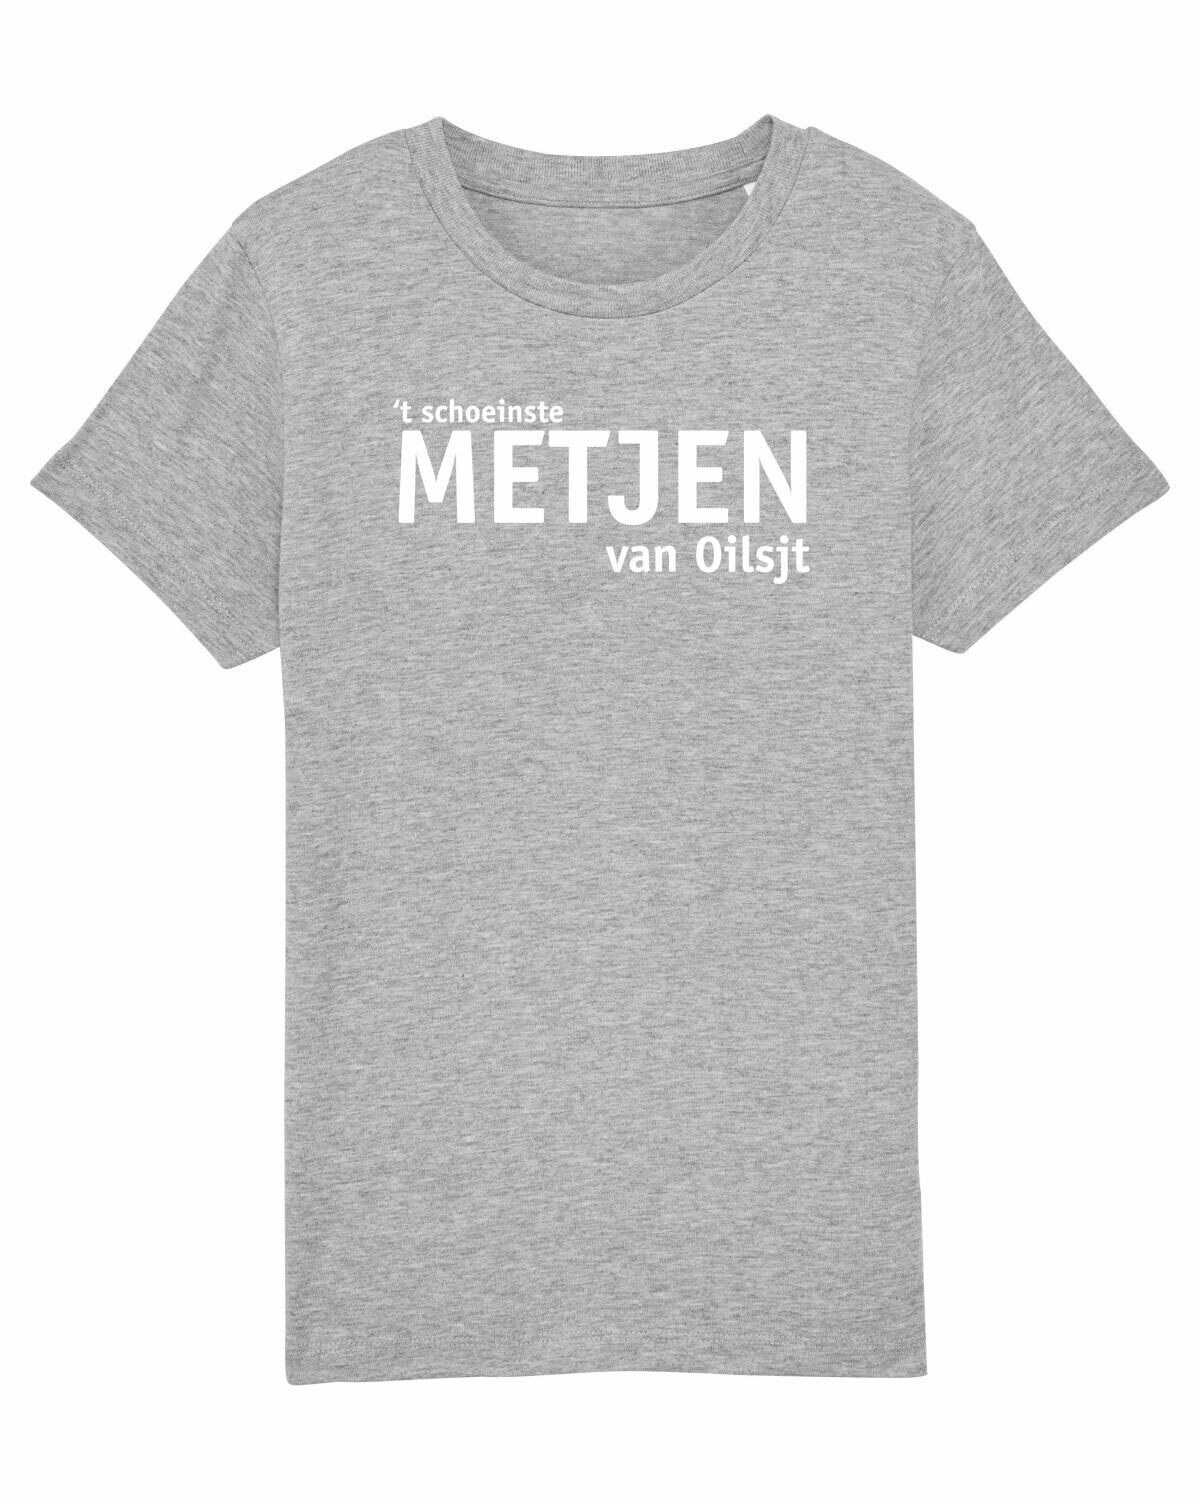 Kids T-shirt Metjen